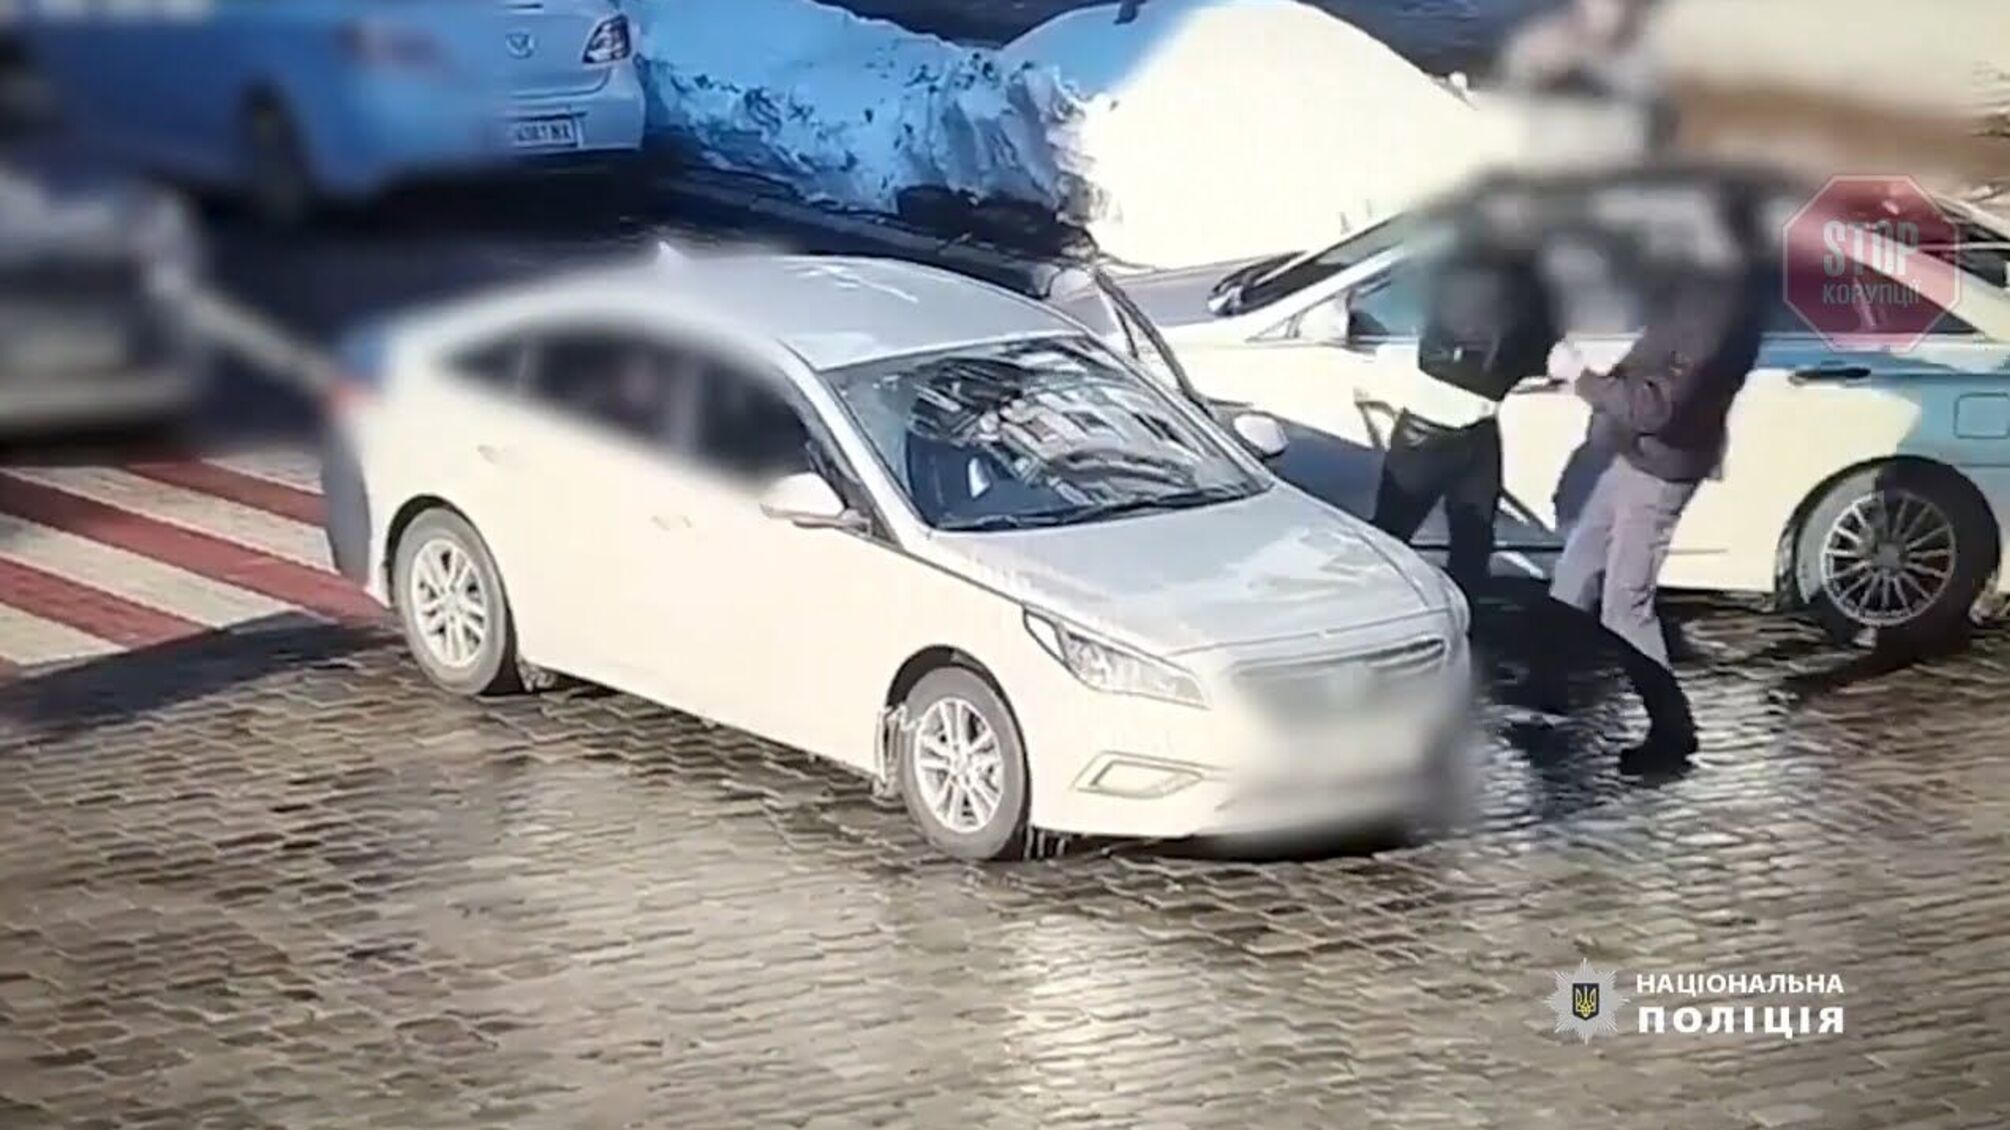 Убил двумя ударами: полицейские устанавливают обстоятельства смерти мужчины в центре столицы (фото, видео)